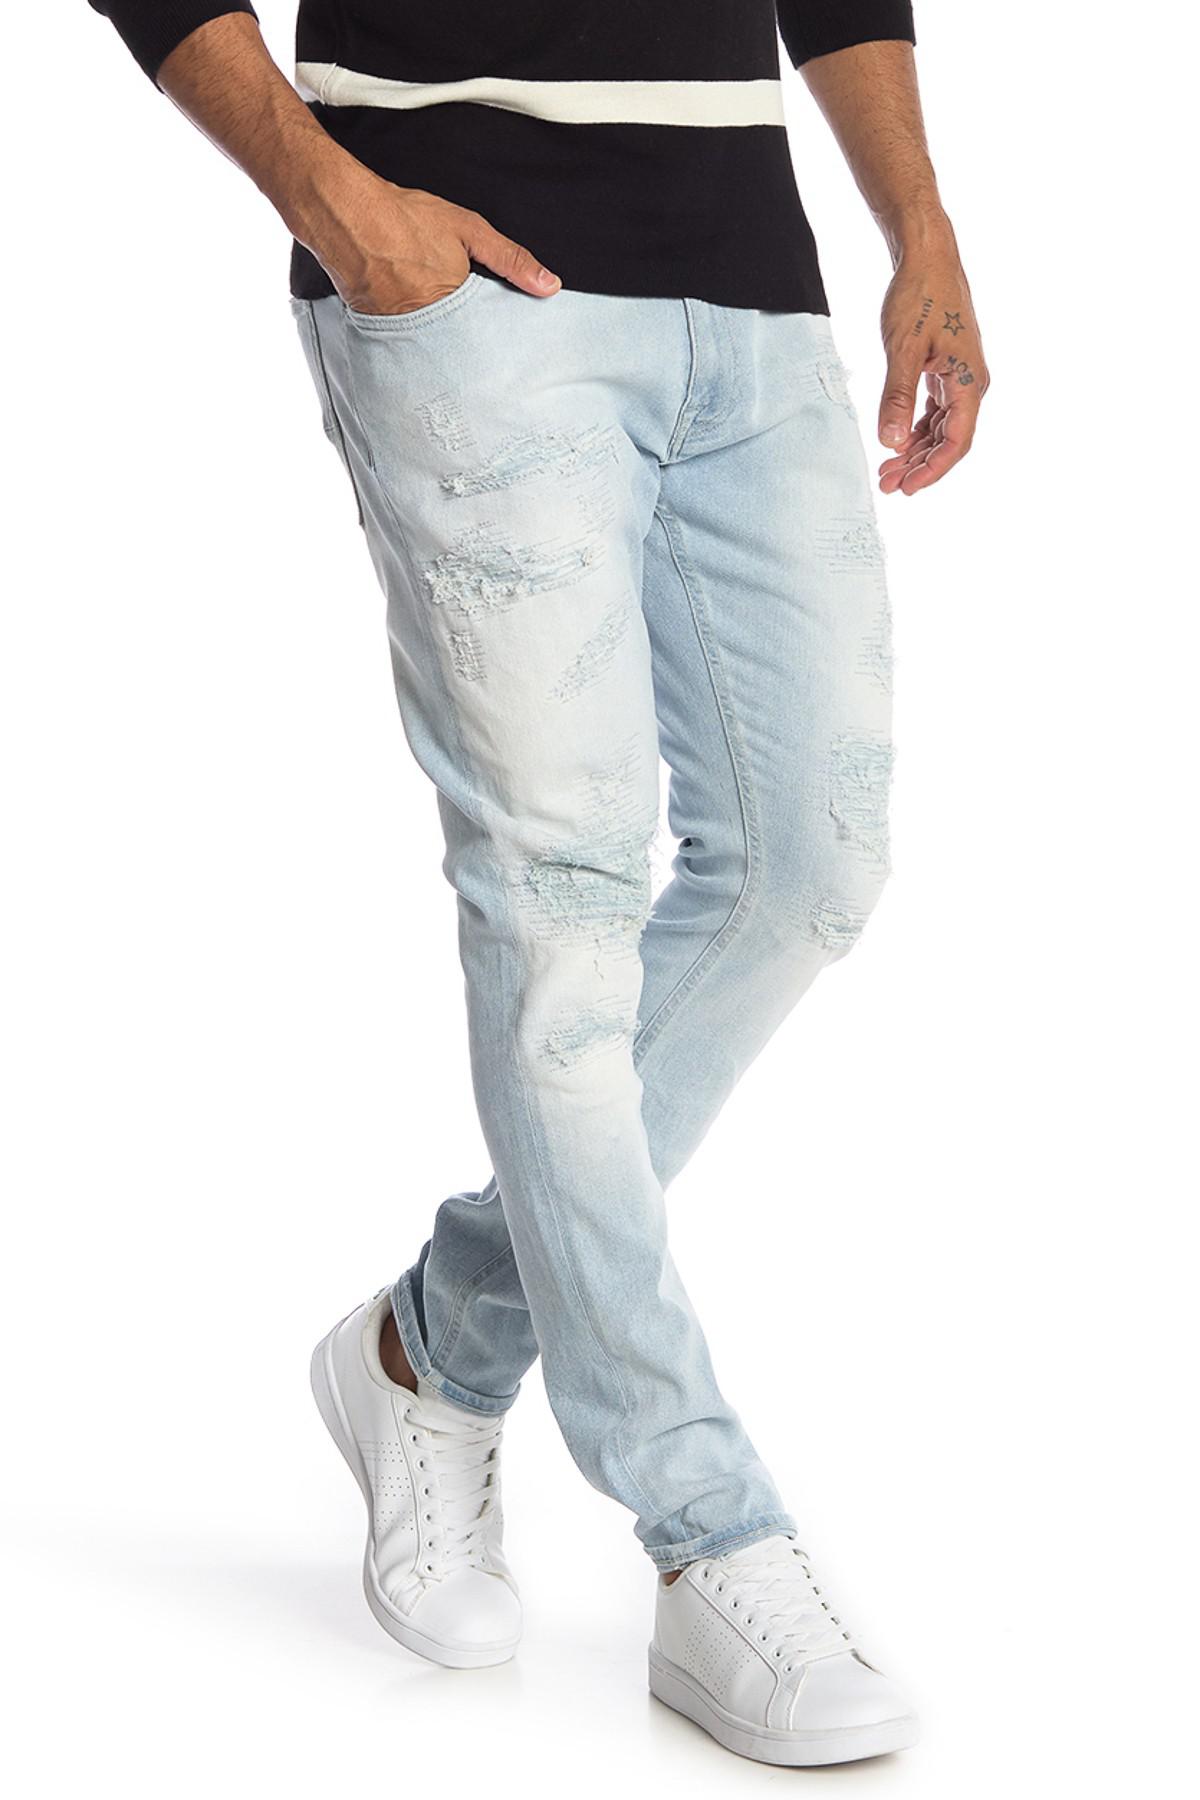 Tommy Hilfiger Lewis Hamilton Jeans Flash Sales, SAVE 33% - fearthemecca.com